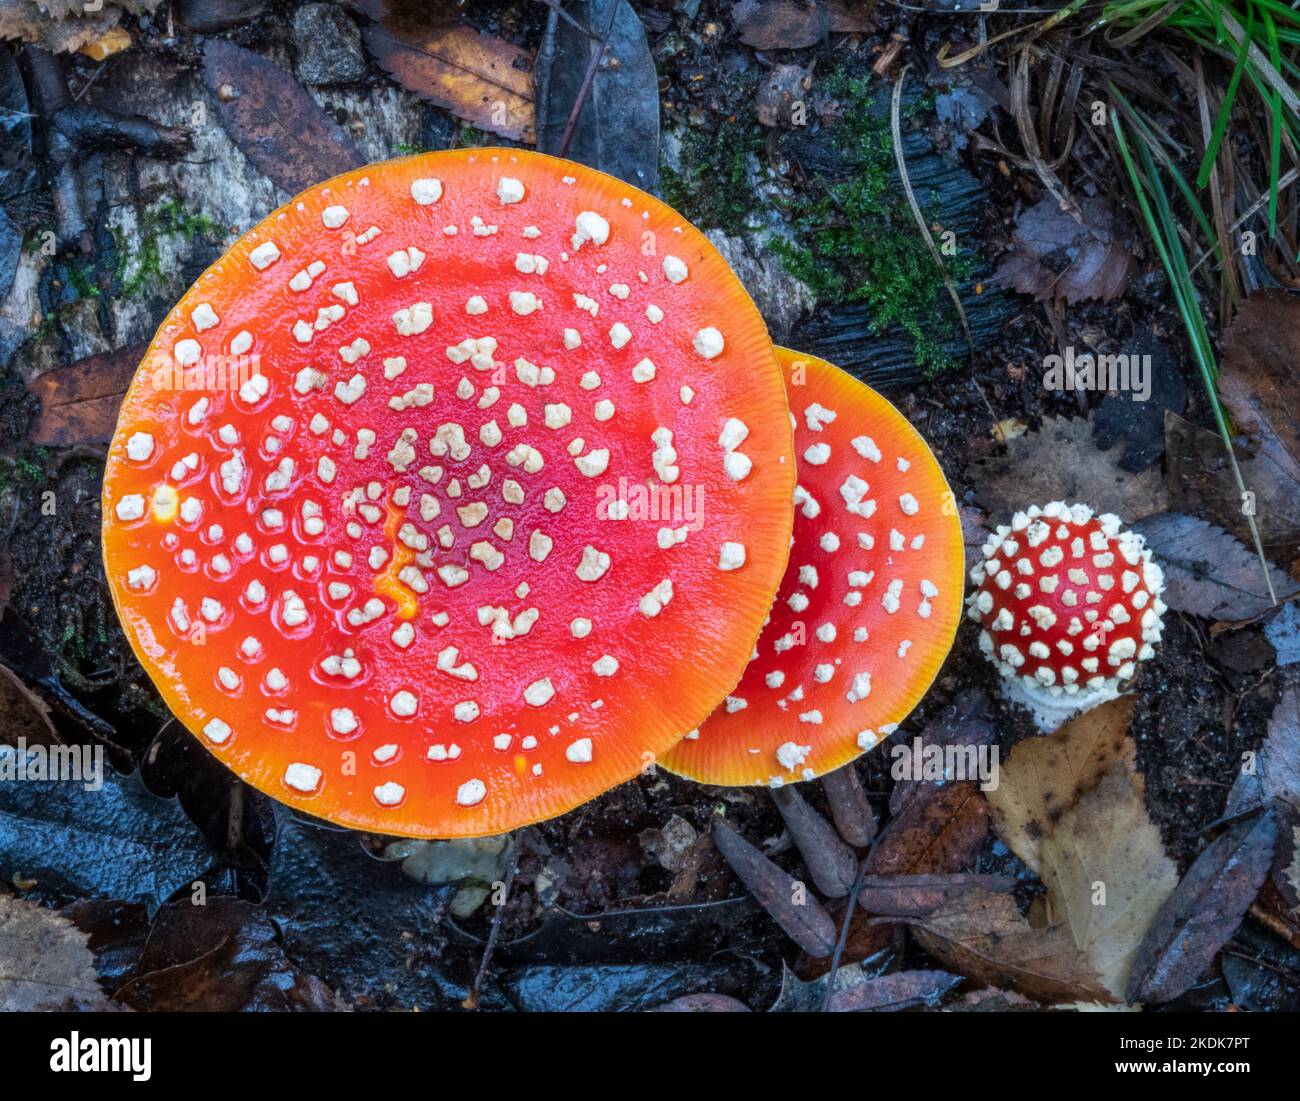 Un groupe coloré de champignon de la mouche agarique, croissant sur le sol des bois parmi les feuilles mortes Banque D'Images